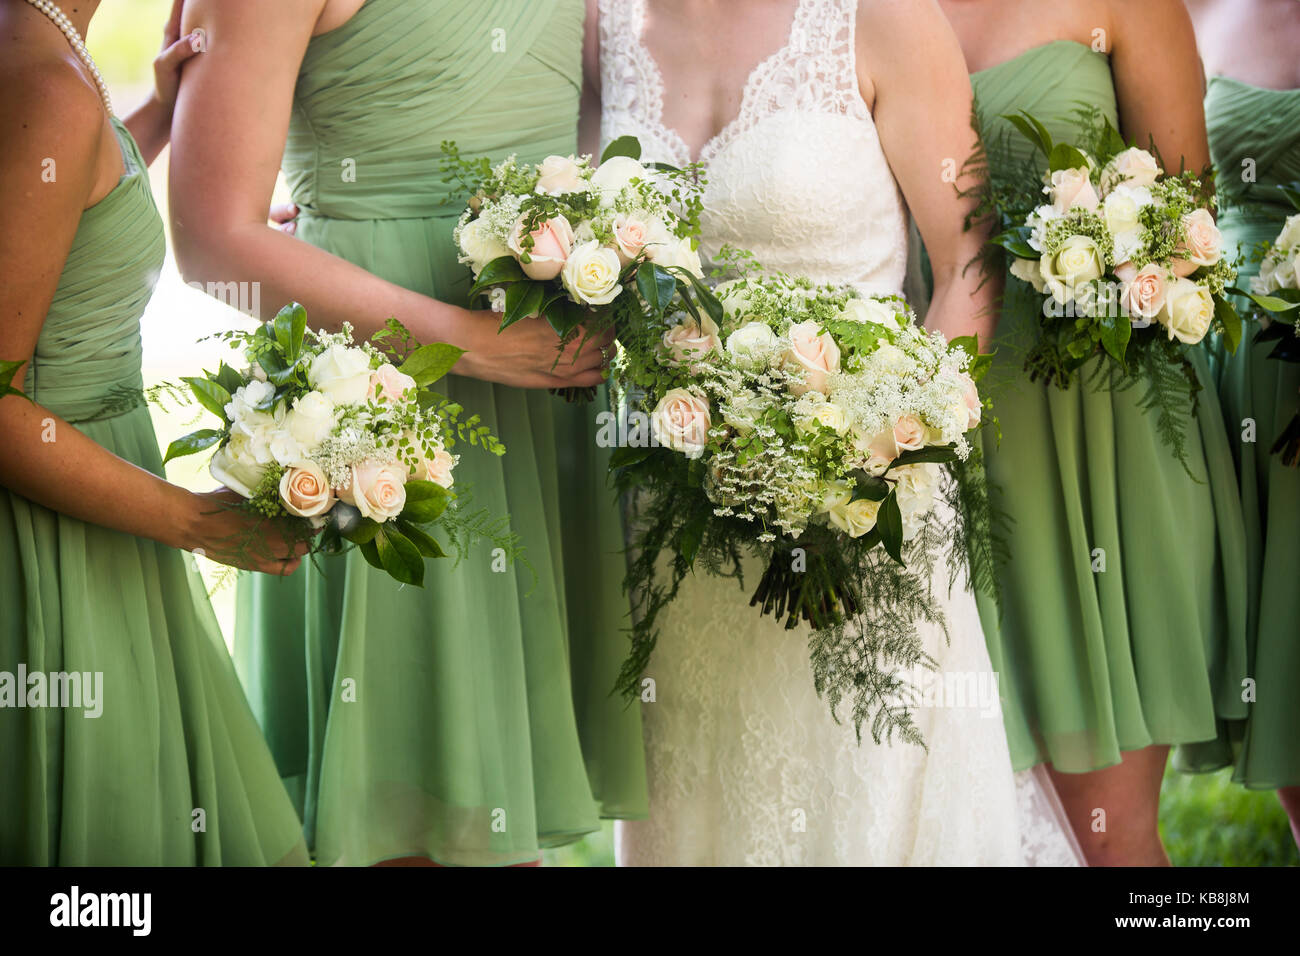 Un franco foto de la novia y sus damas de honor vestidos de verde claro  bridesmaid vestidos y sosteniendo un magnífico bouquet rosas blancas y  rosas con br del bebé Fotografía de